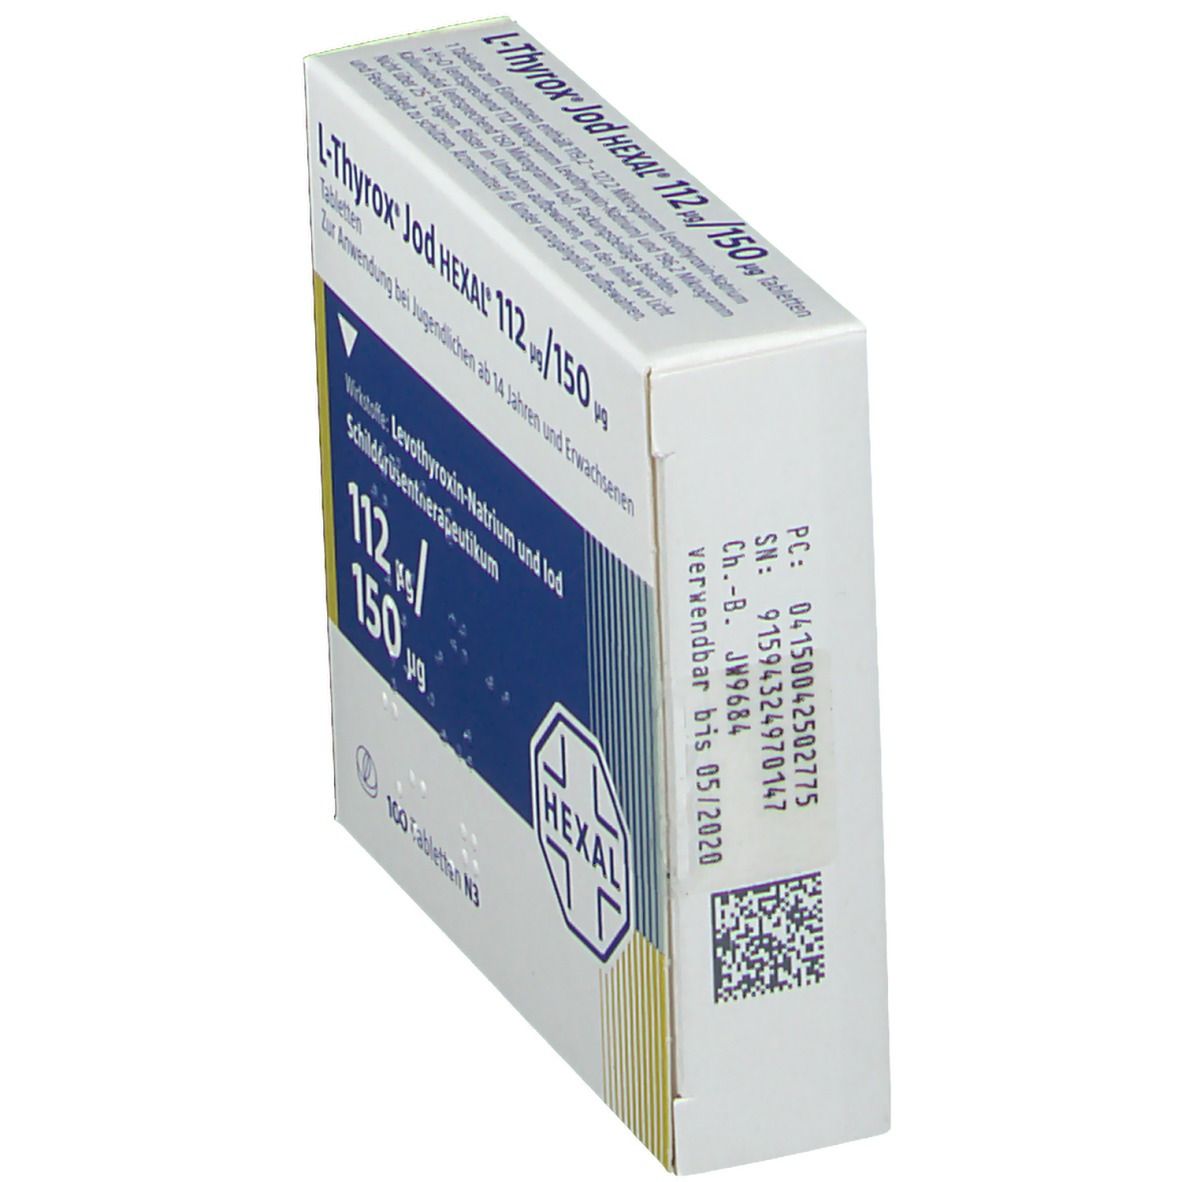 L-Thyrox® Jod HEXAL® 112 µg/150 µg